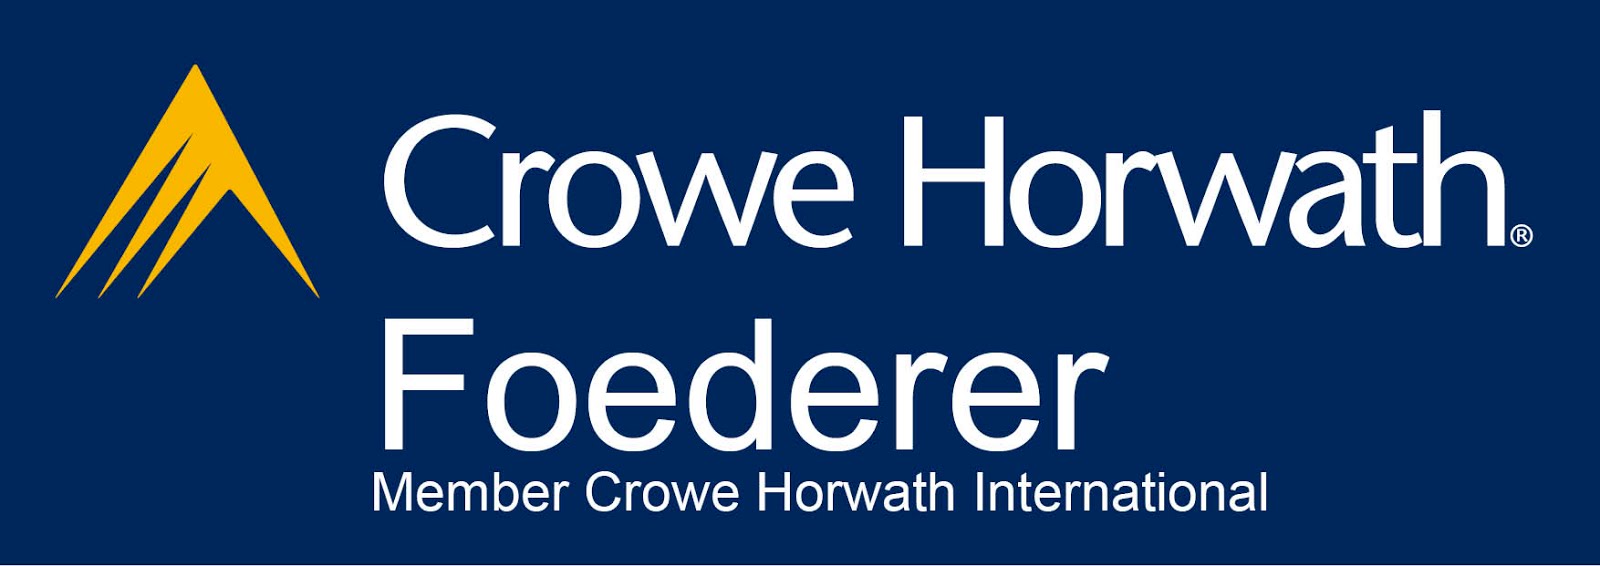 Crowe Horwath Foederer